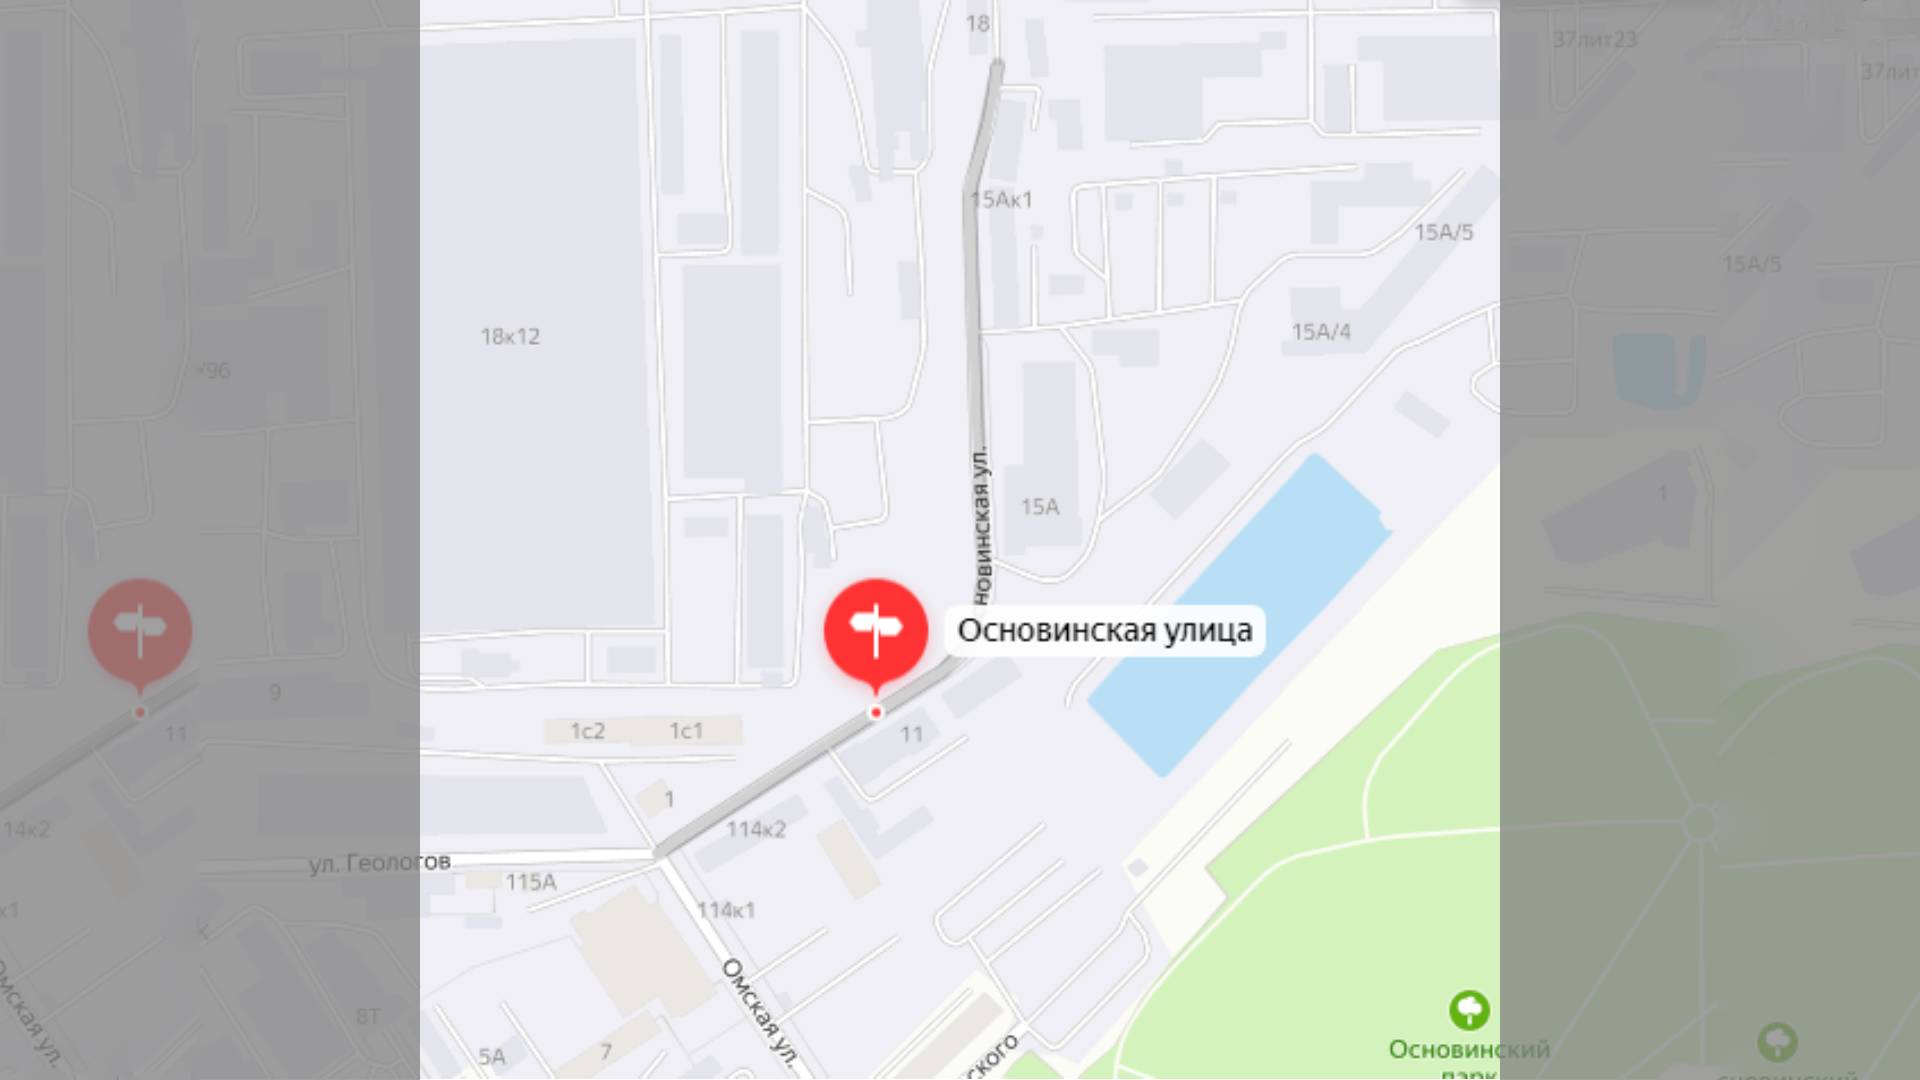 Отсутствие освещения по улице Основинская в Екатеринбурге